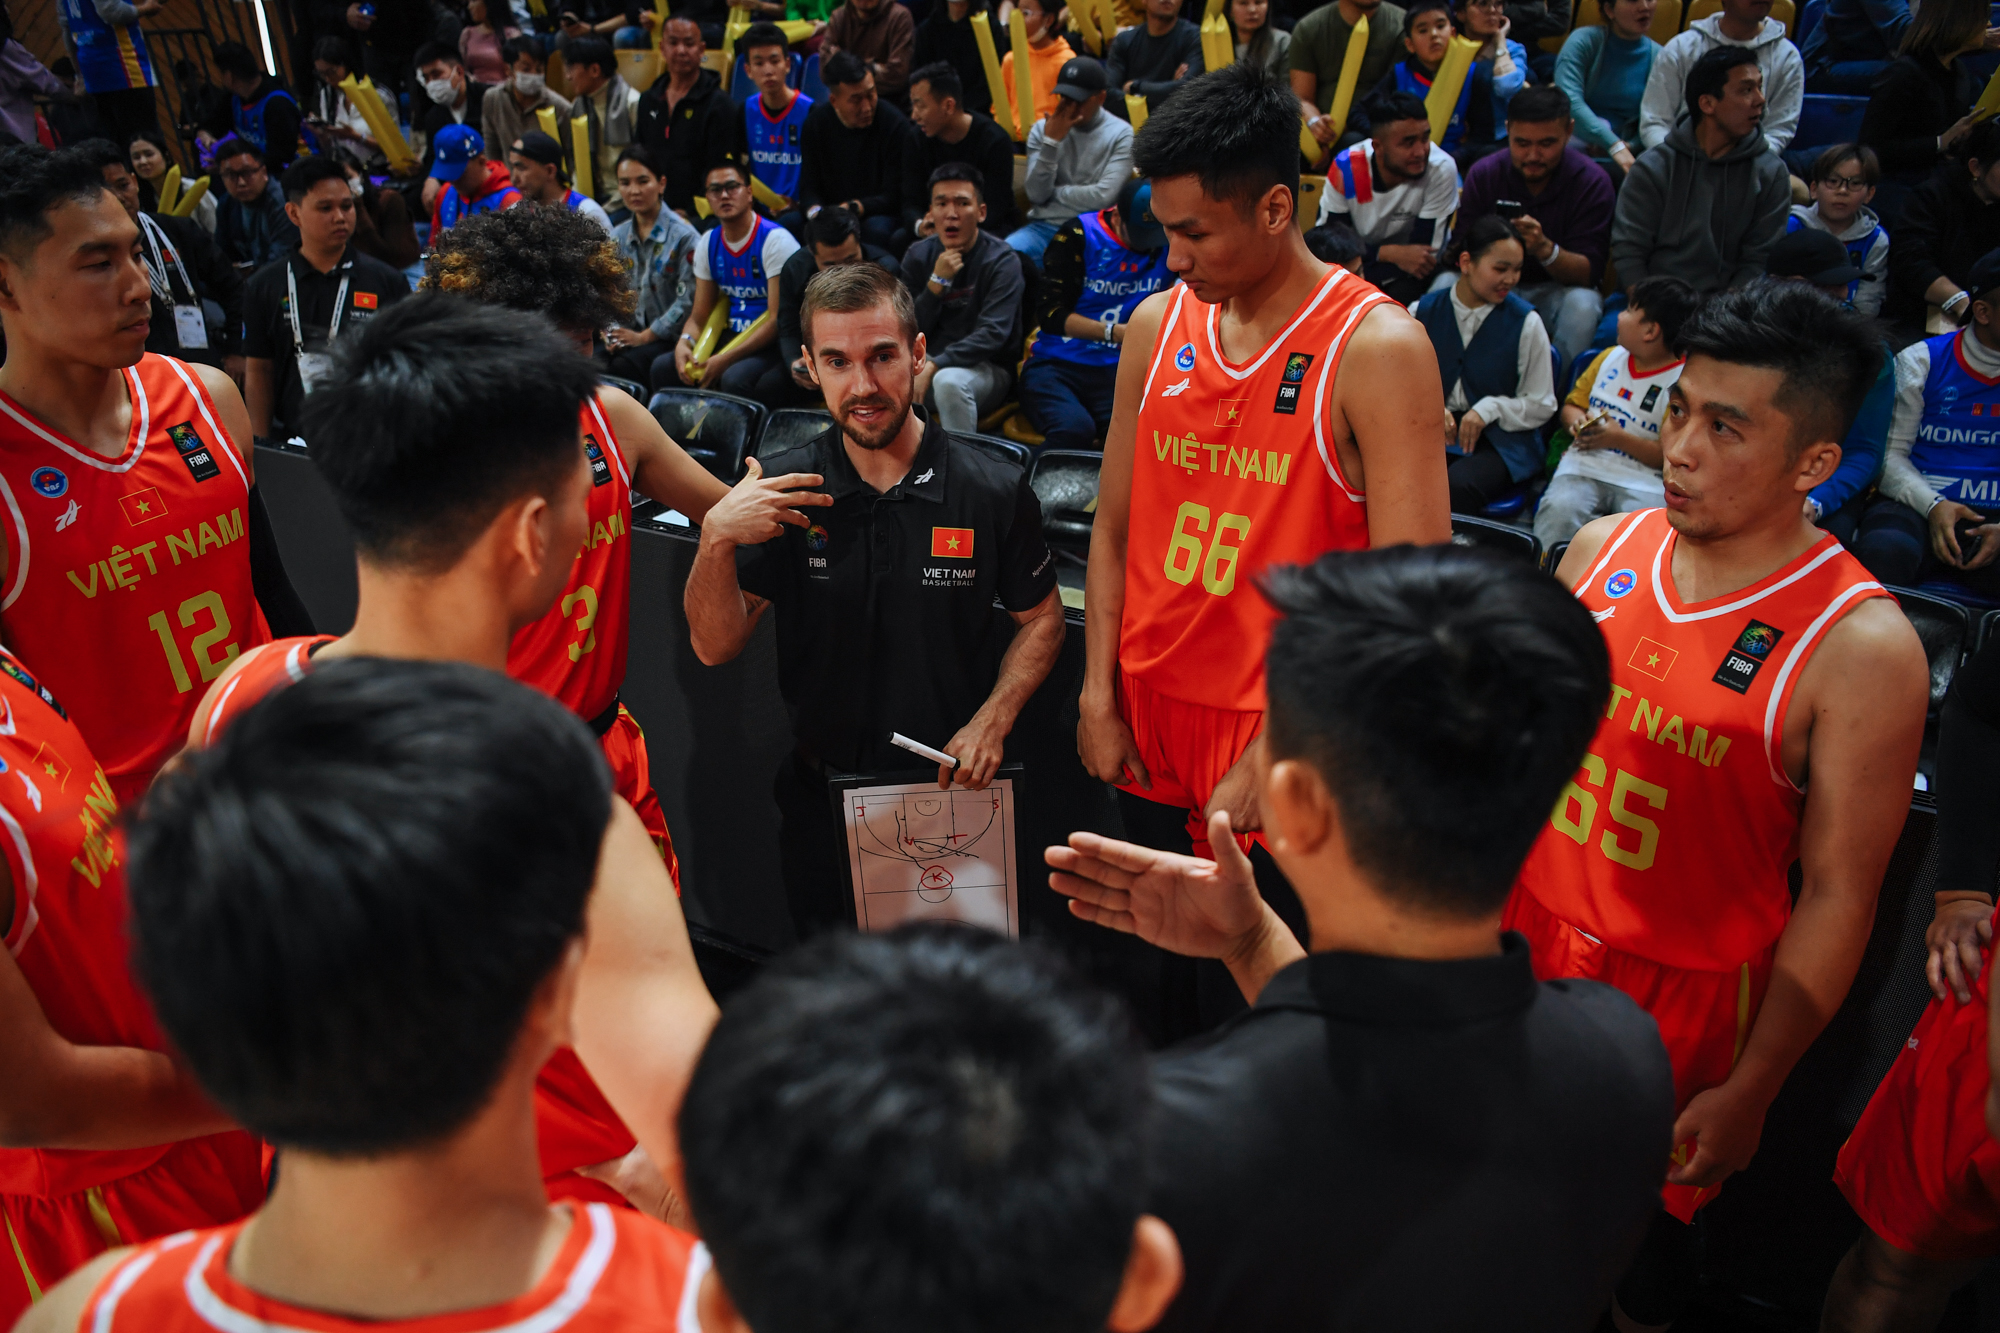 HLV Matt Van Pelt chỉ ra điểm yếu của bóng rổ Việt Nam - Ảnh 4.